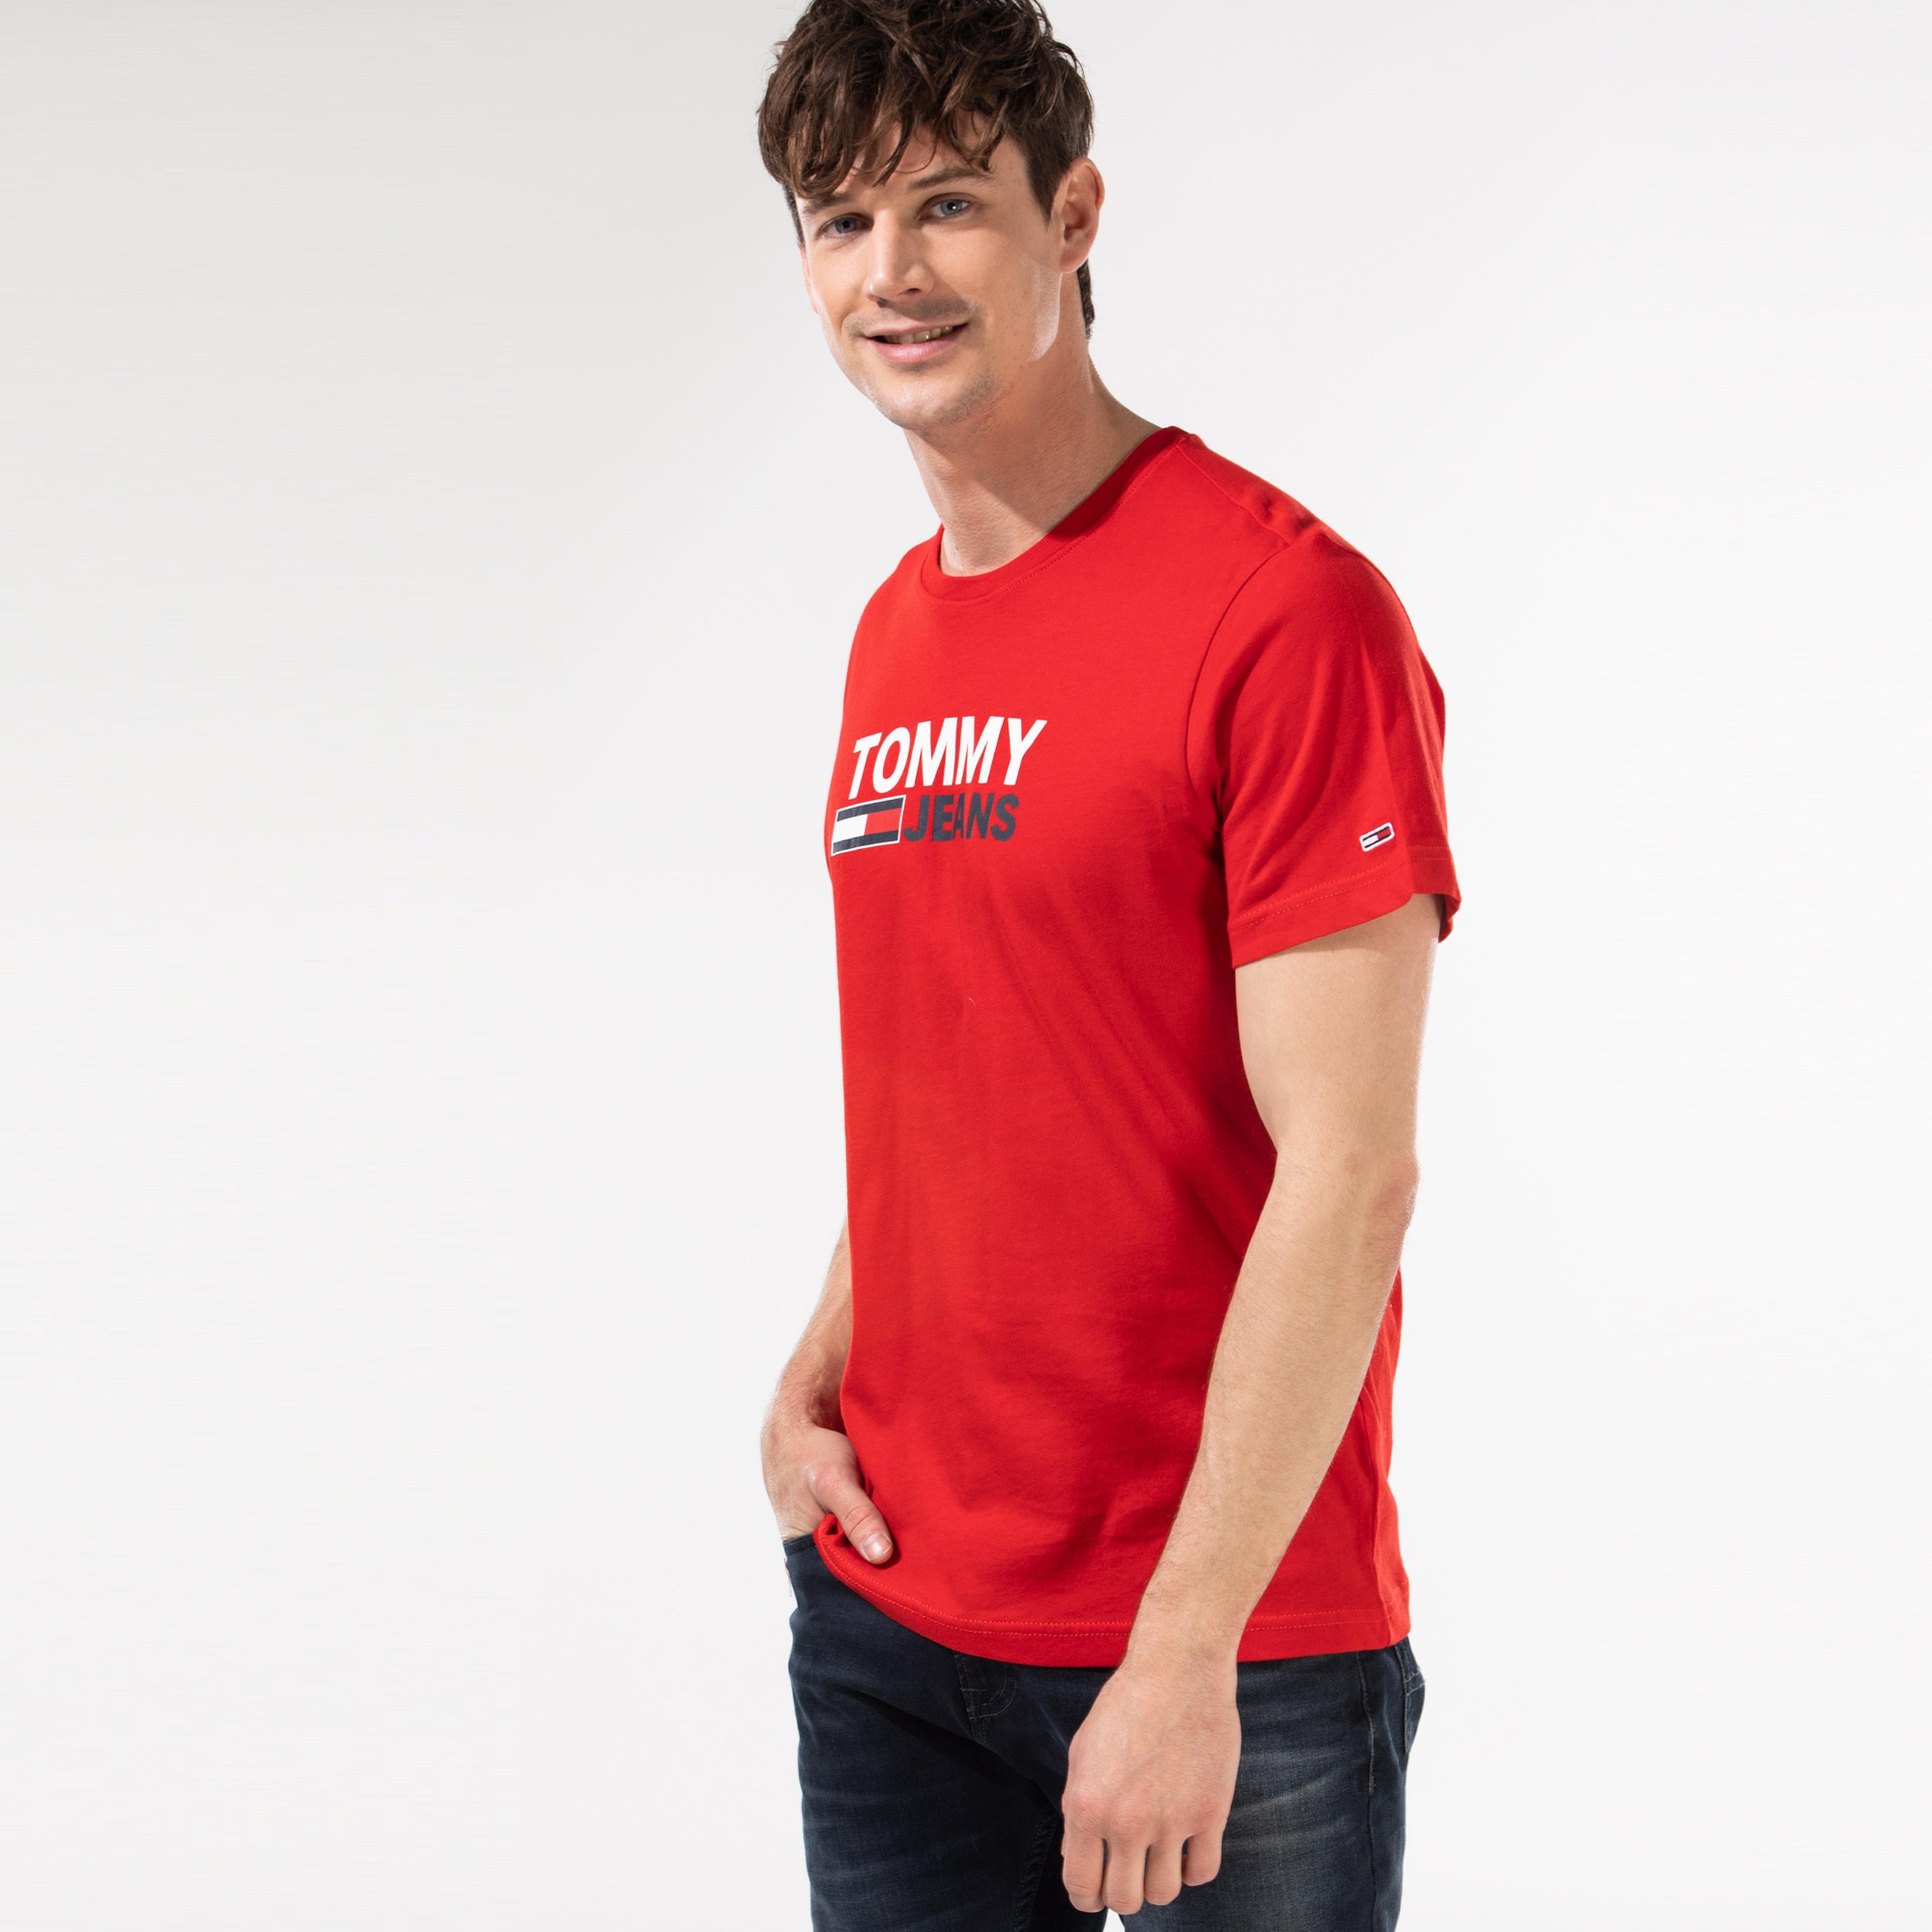 Tommy Hilfiger TJM Corp Logo Erkek Kırmızı T-Shirt